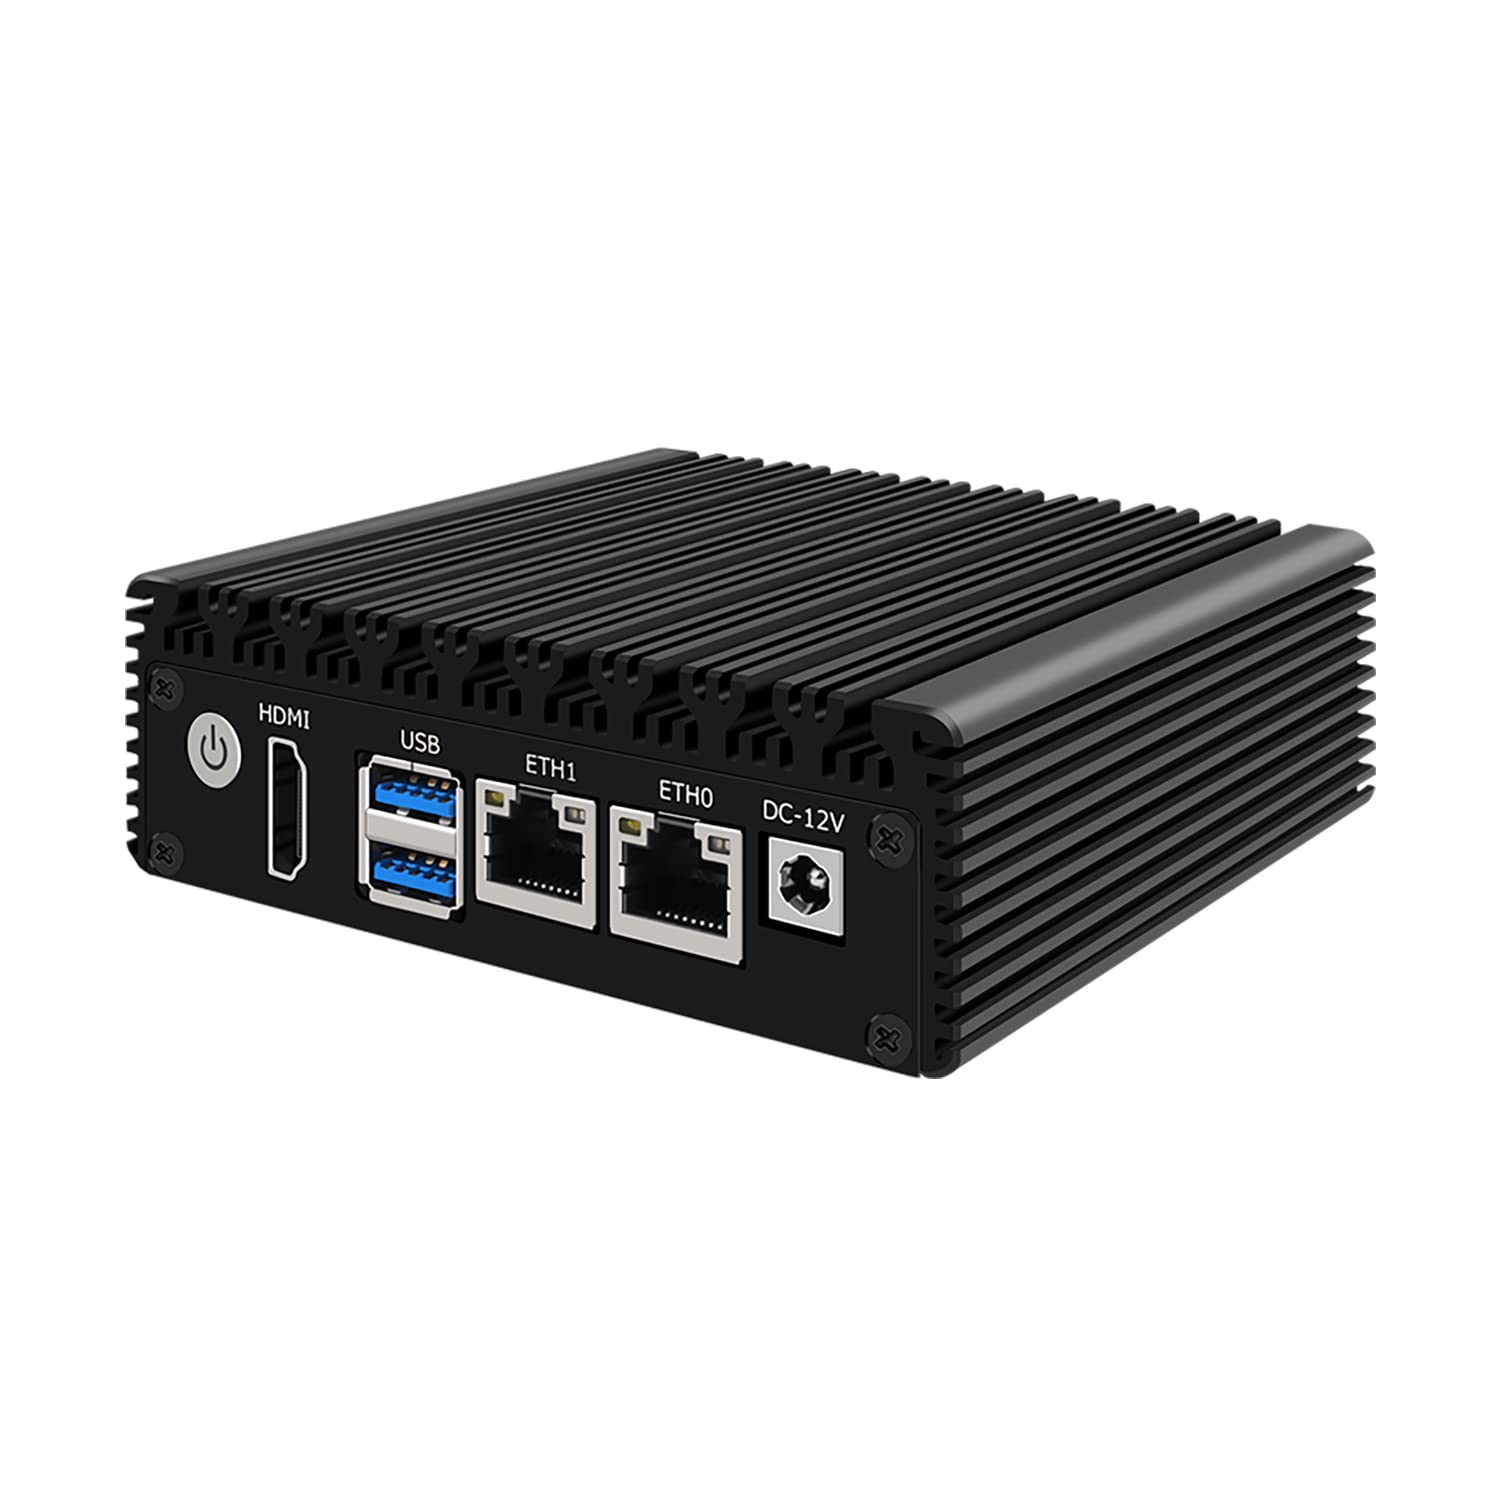 HUNSN Micro Firewall Appliance, Mini PC, VPN, Router PC, Intel Celeron N3050, RJ13, AES-NI, 2 x Realtek RTL8111H LAN, HDMI, 2 x USB3.0, Barebone, NO RAM, NO Storage, NO System